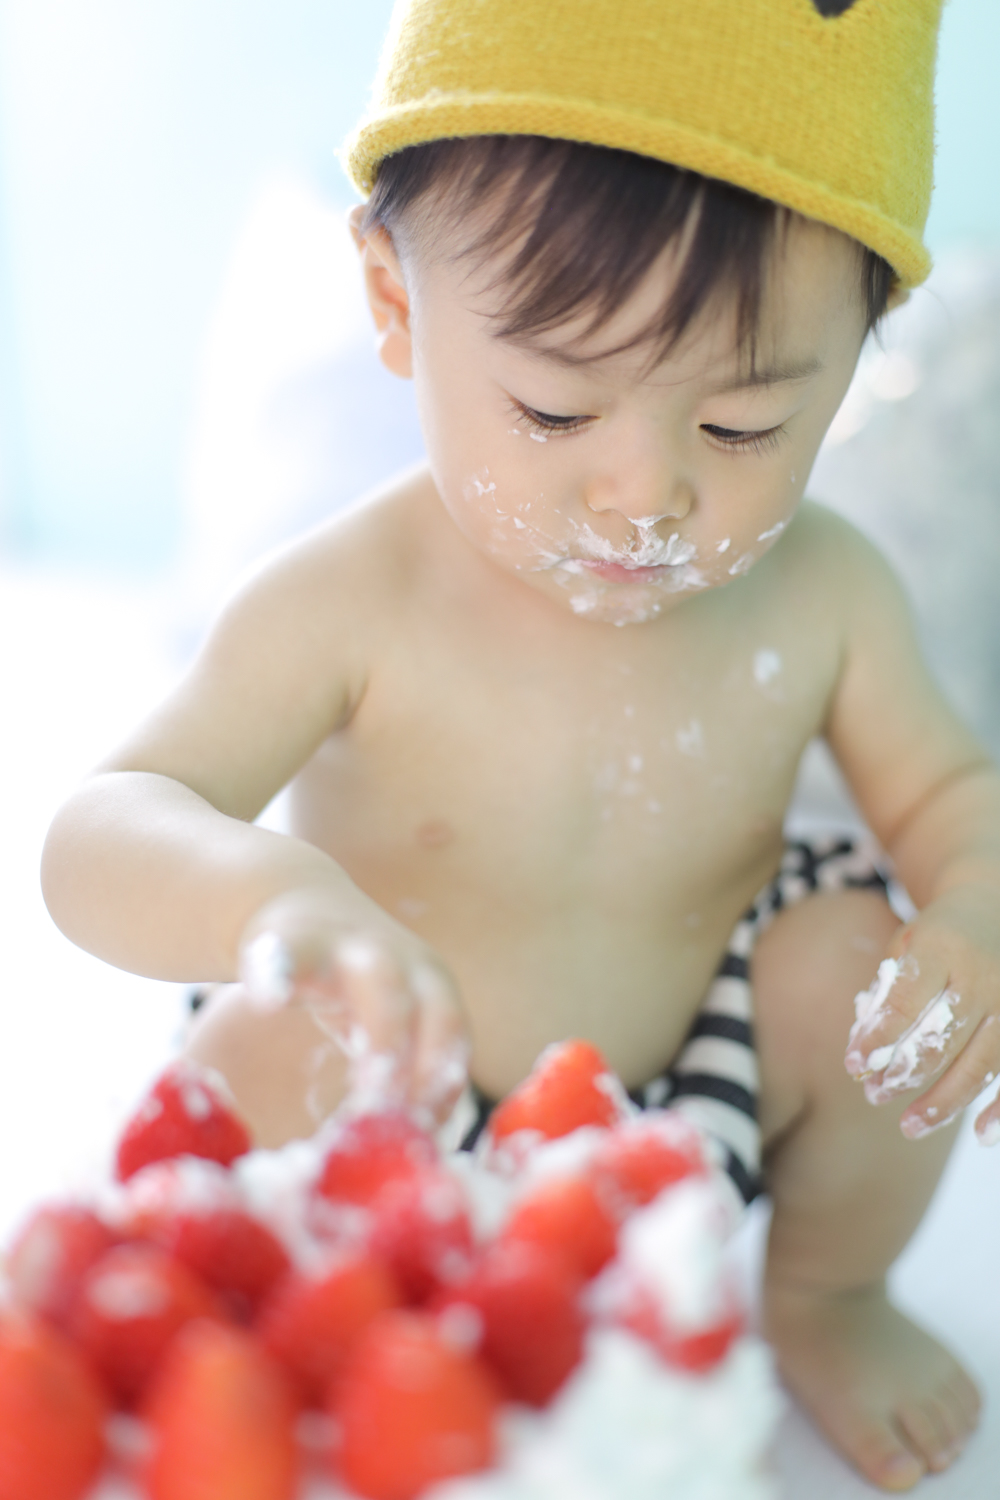 男の子の赤ちゃんがケーキを触っている写真